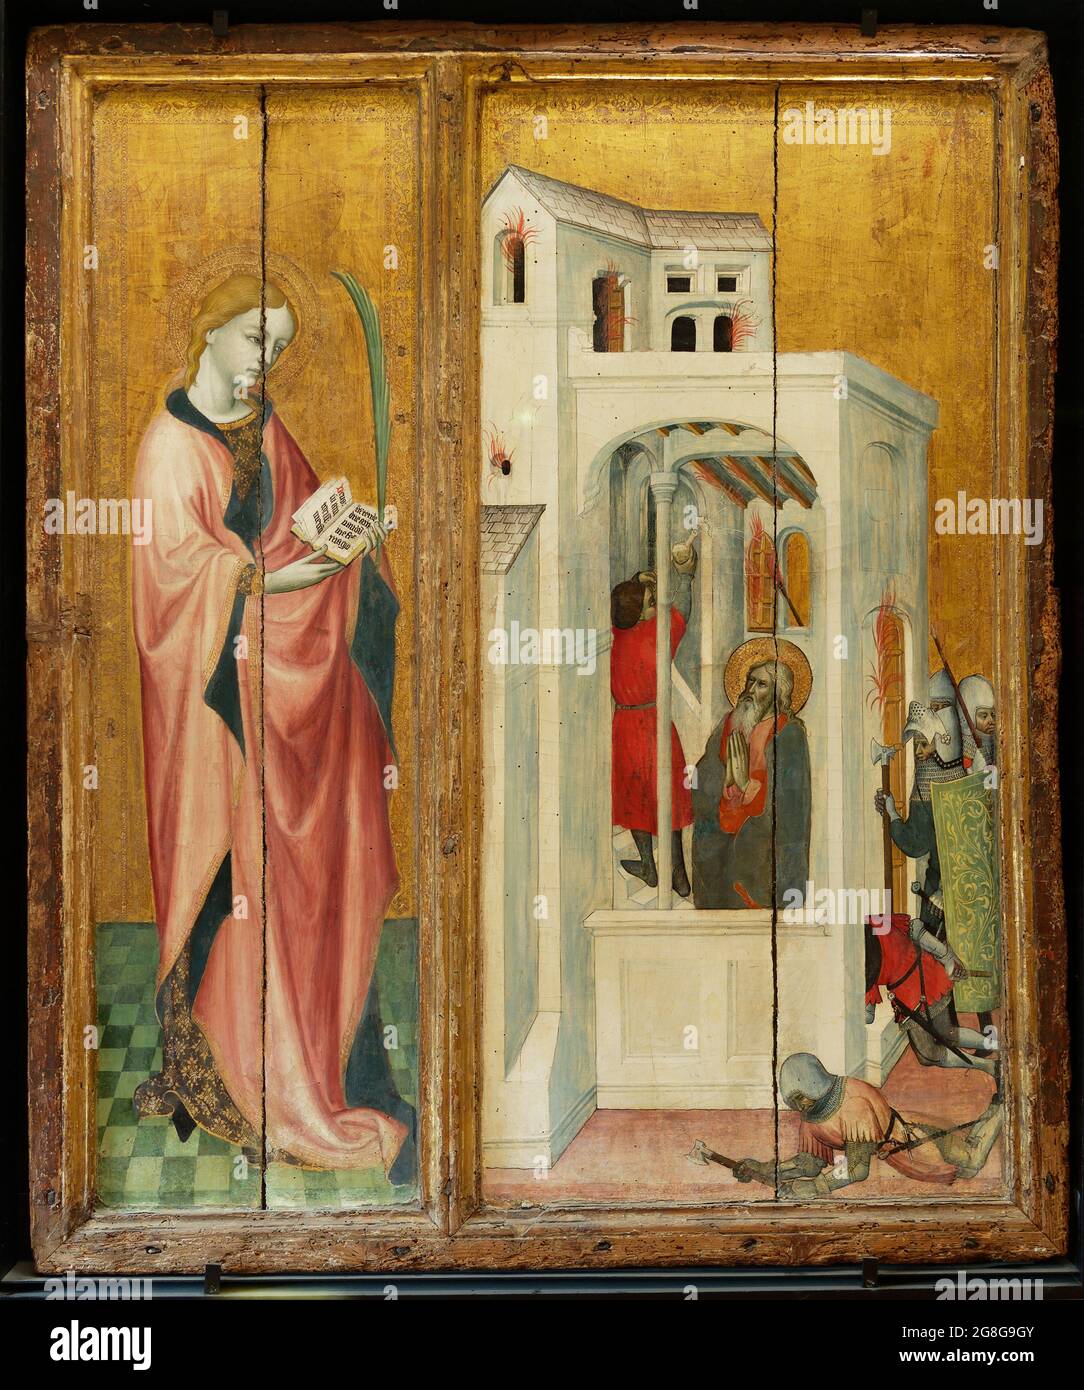 saint André fait éteindre un incendie par son disciple ainsi qu'une figure d'une sainte (peut-être sainte Claire ou sainte Catherine) Stock Photo